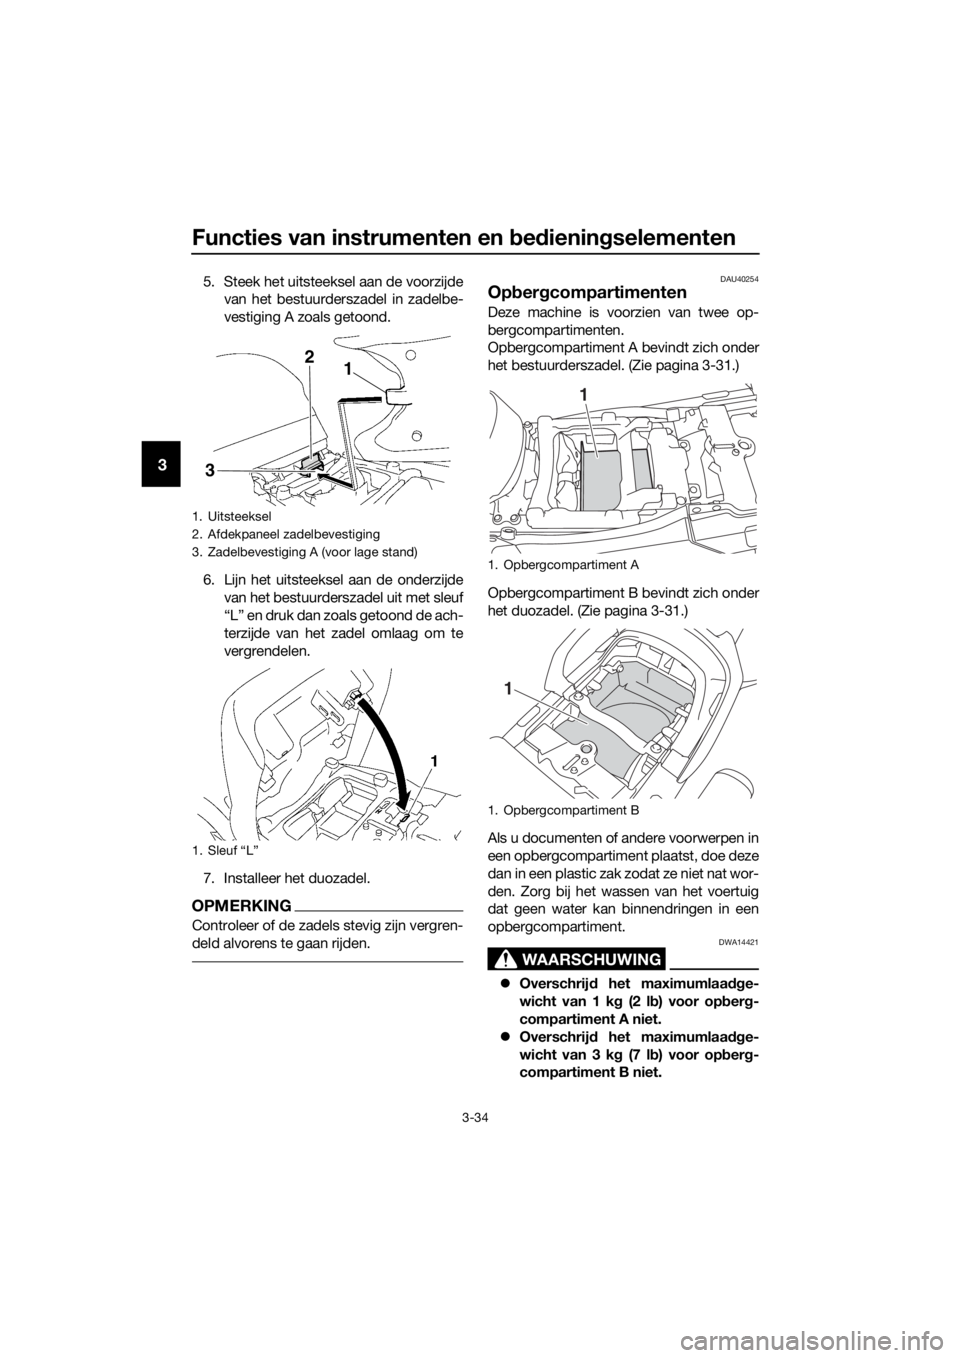 YAMAHA FJR1300A 2018  Instructieboekje (in Dutch) Functies van instrumenten en bed iening selementen
3-34
3
5. Steek het uitsteeksel aan de voorzijde
van het bestuurderszadel in zadelbe-
vestiging A zoals getoond.
6. Lijn het uitsteeksel aan de onder